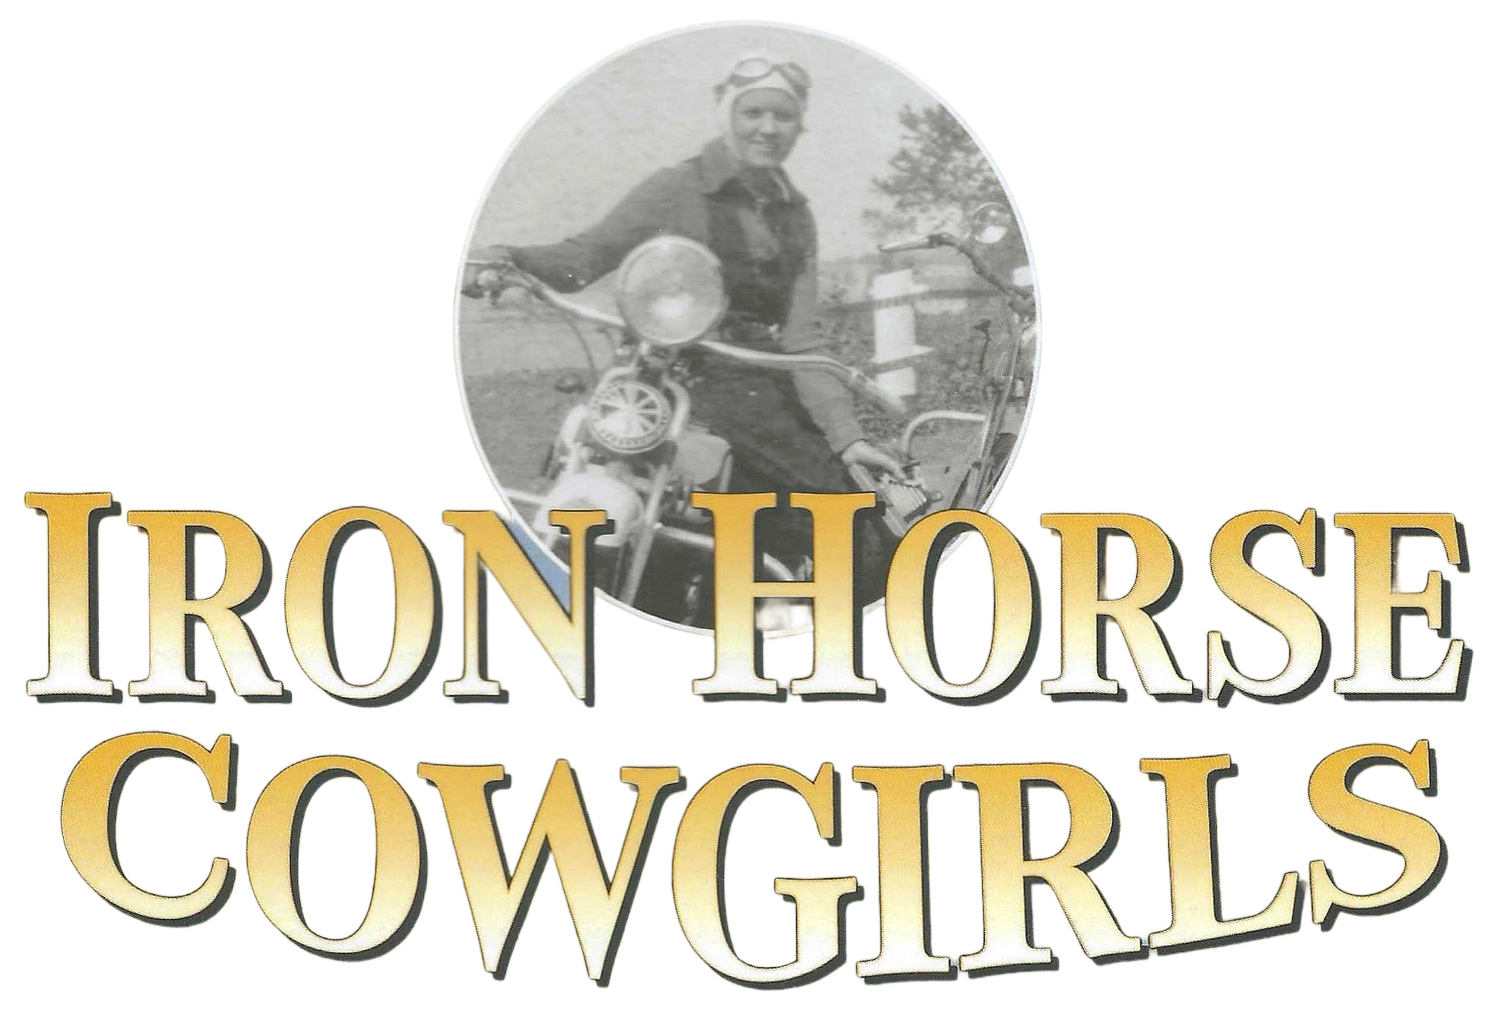 IronHorseCowgirls.com